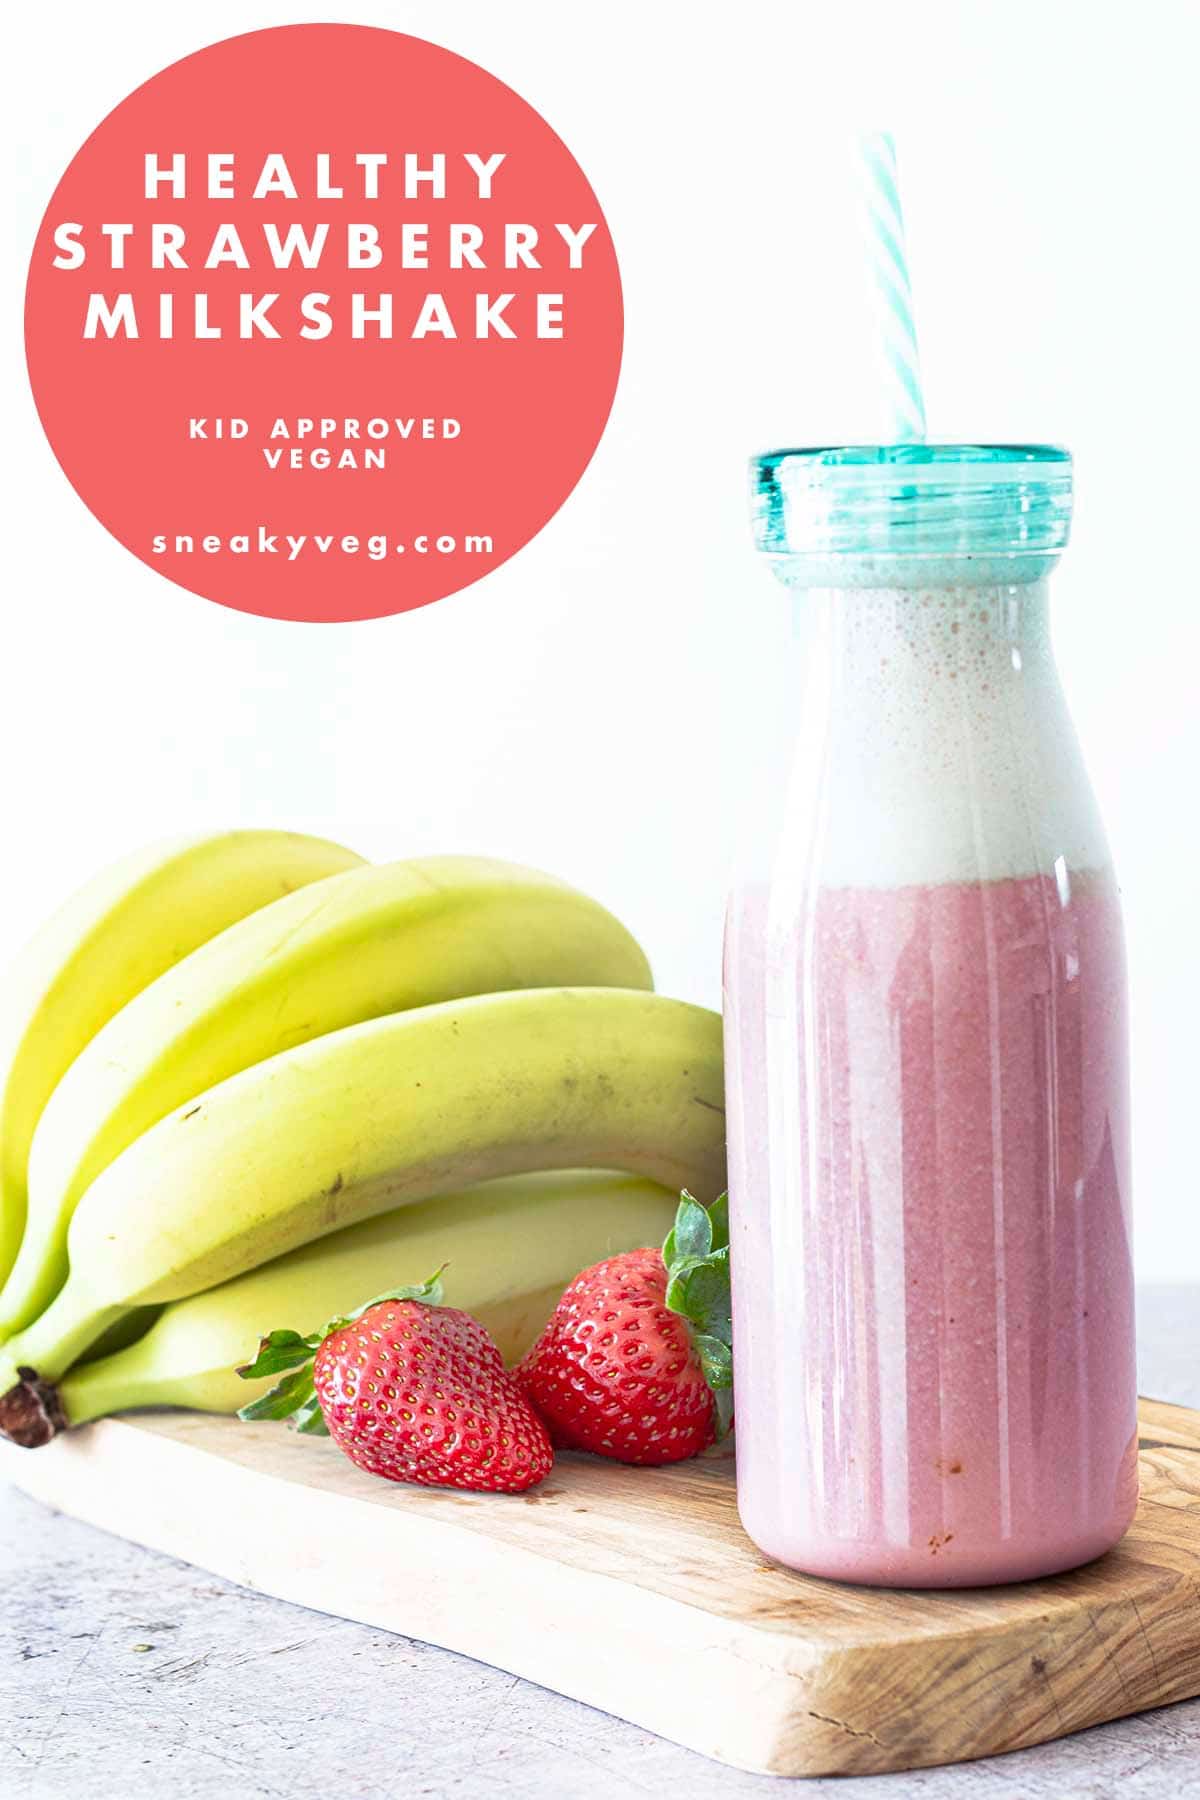 strawberry milkshake in bottle with fruit